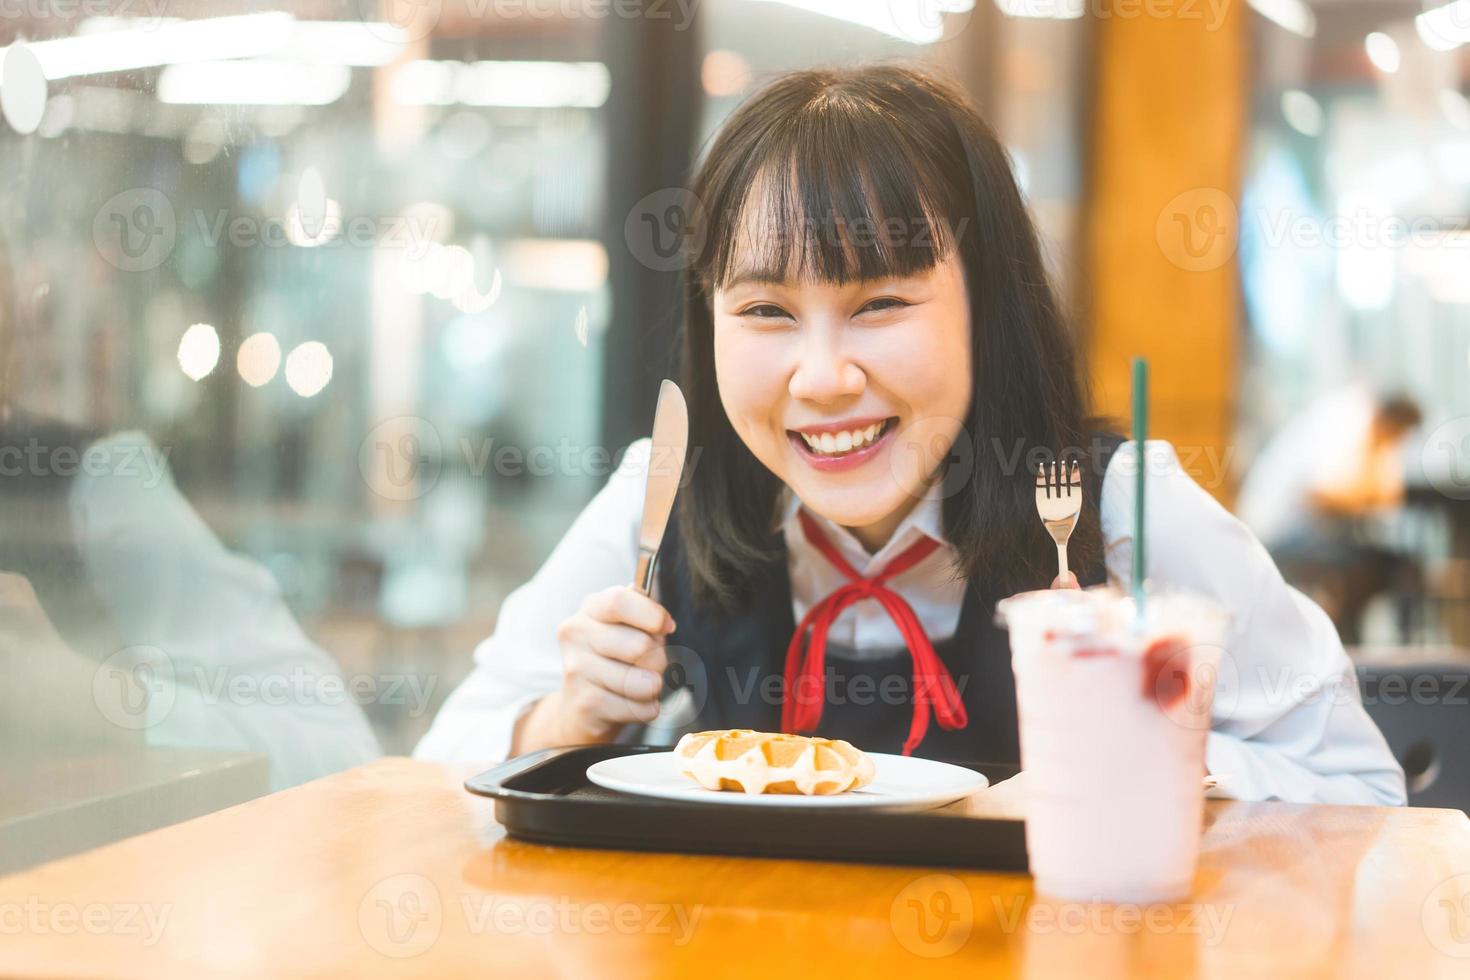 glückliche junge asiatin in japanischer uniform studentin im café mit waffel foto